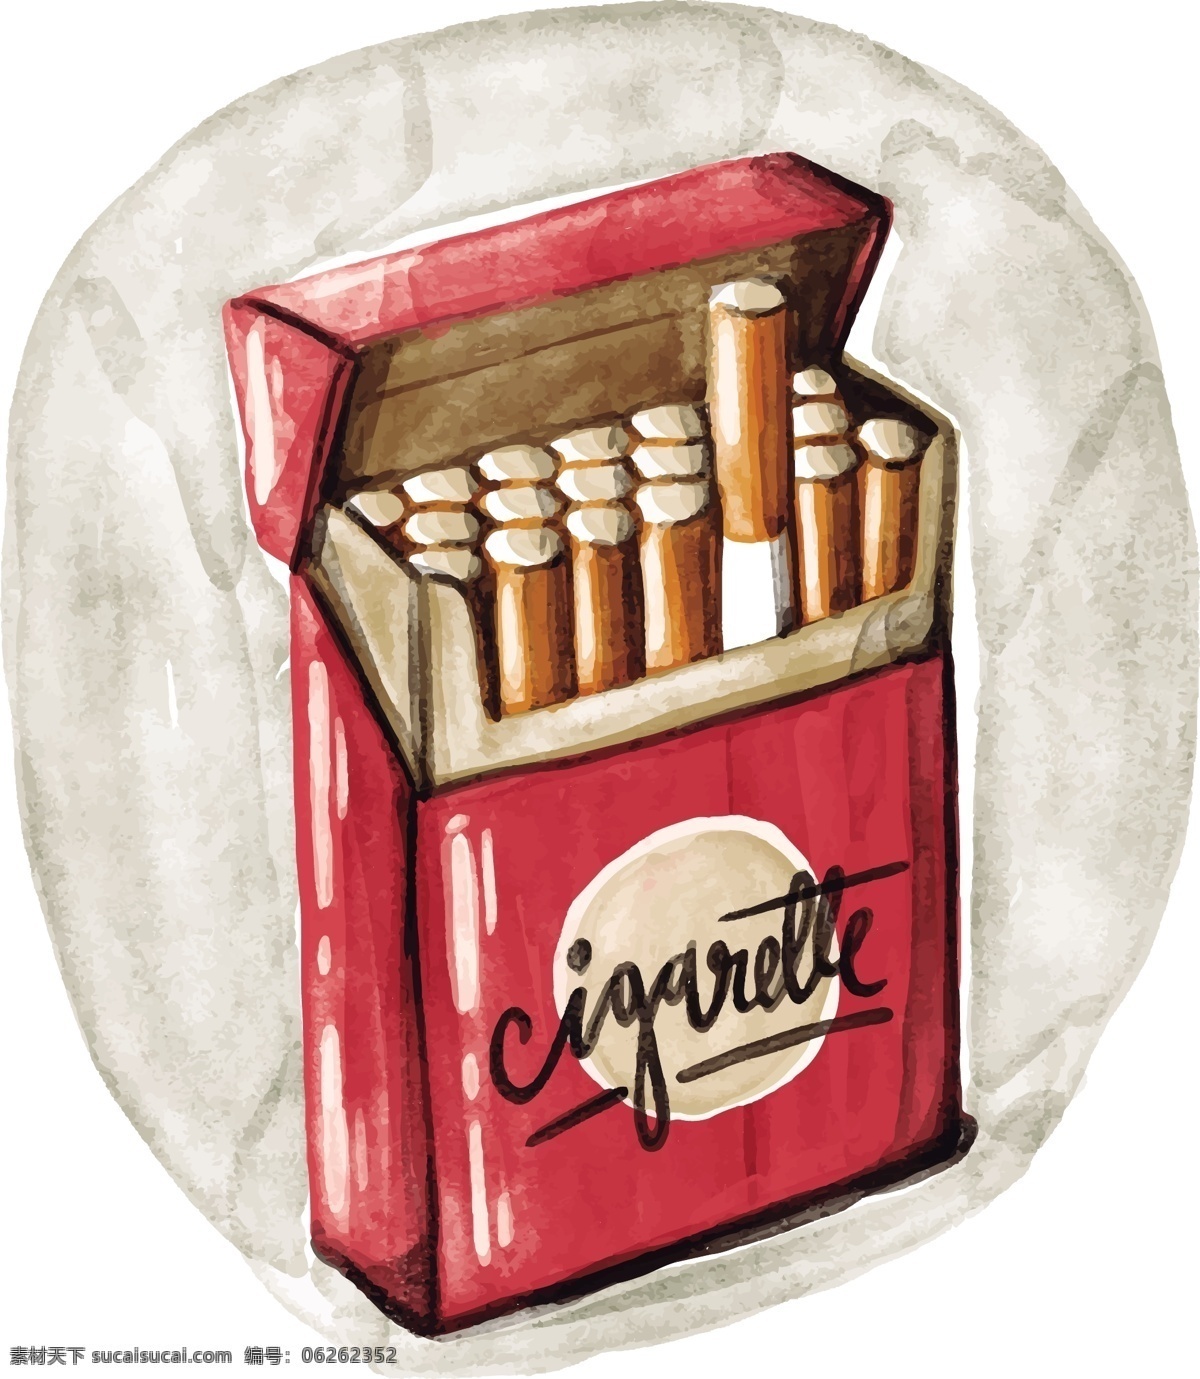 免费 香烟盒 水彩 矢量 水彩画 包装 尼古丁 麻醉 产品 烟草 不健康 警告 红色 烟雾 吸烟者 雪茄 香烟 癌症 成瘾 背景 危险 健康 香烟包